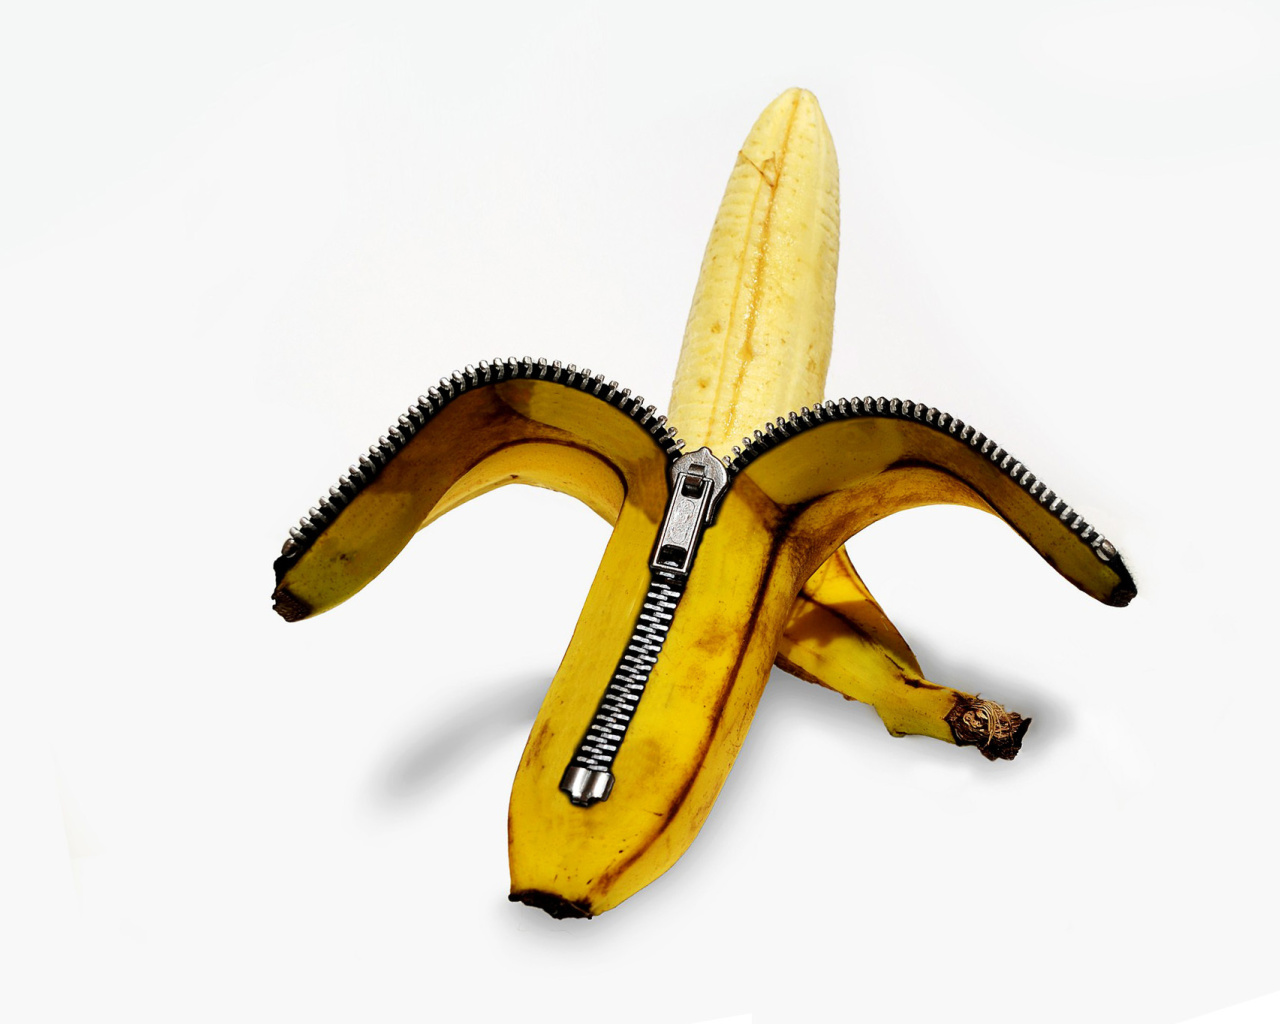 Funny banana as zipper screenshot #1 1280x1024